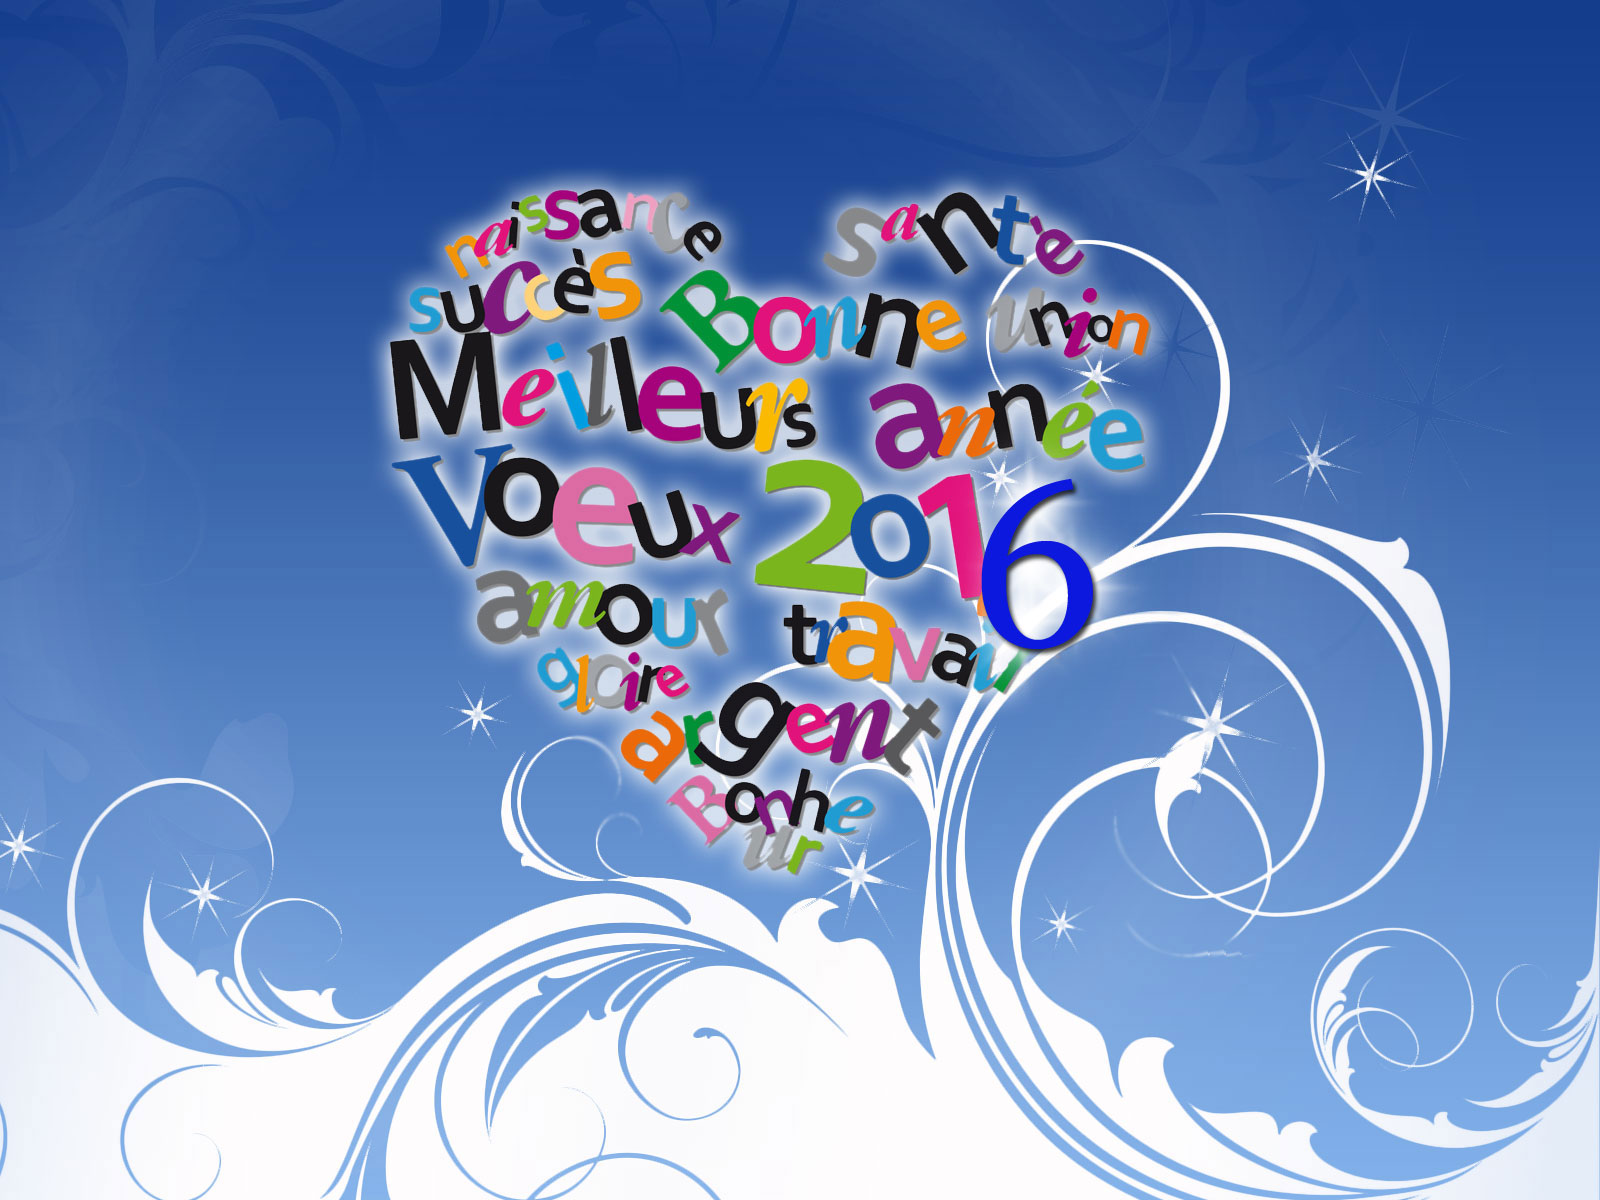 Bonne année, tous nos voeux